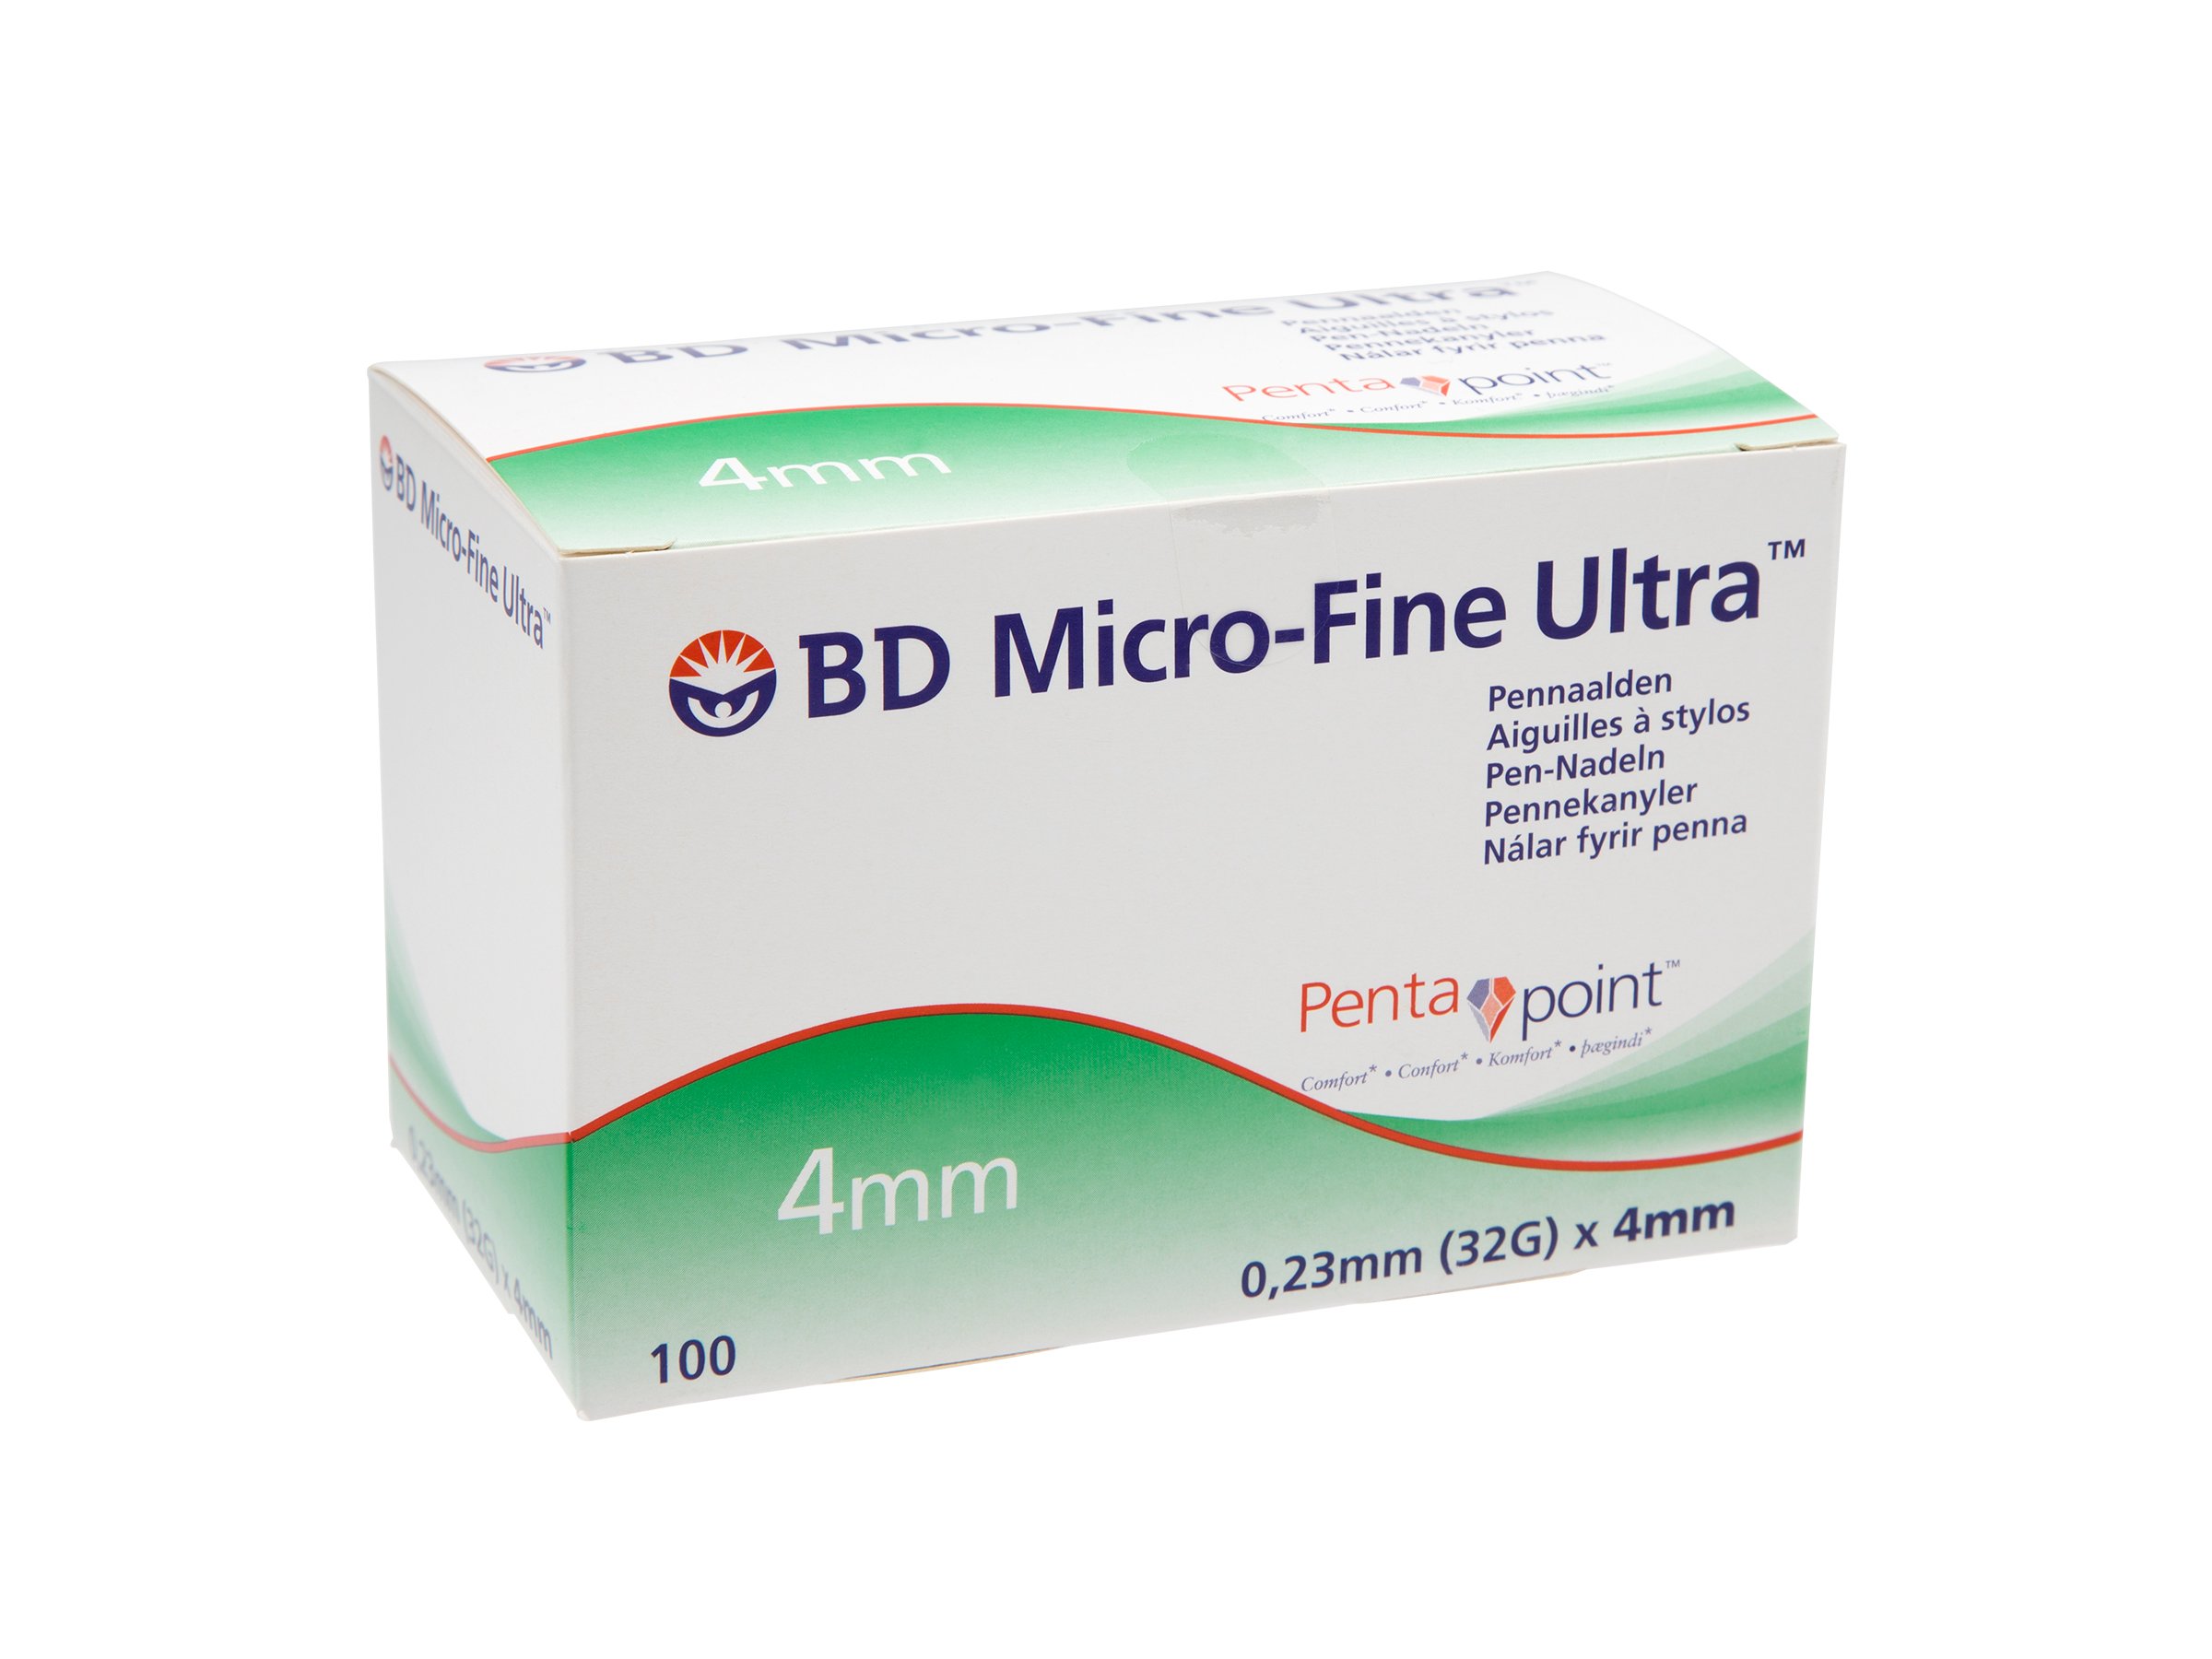 BD Micro-Fine+ Ultra, 4 mm, 100 stk.